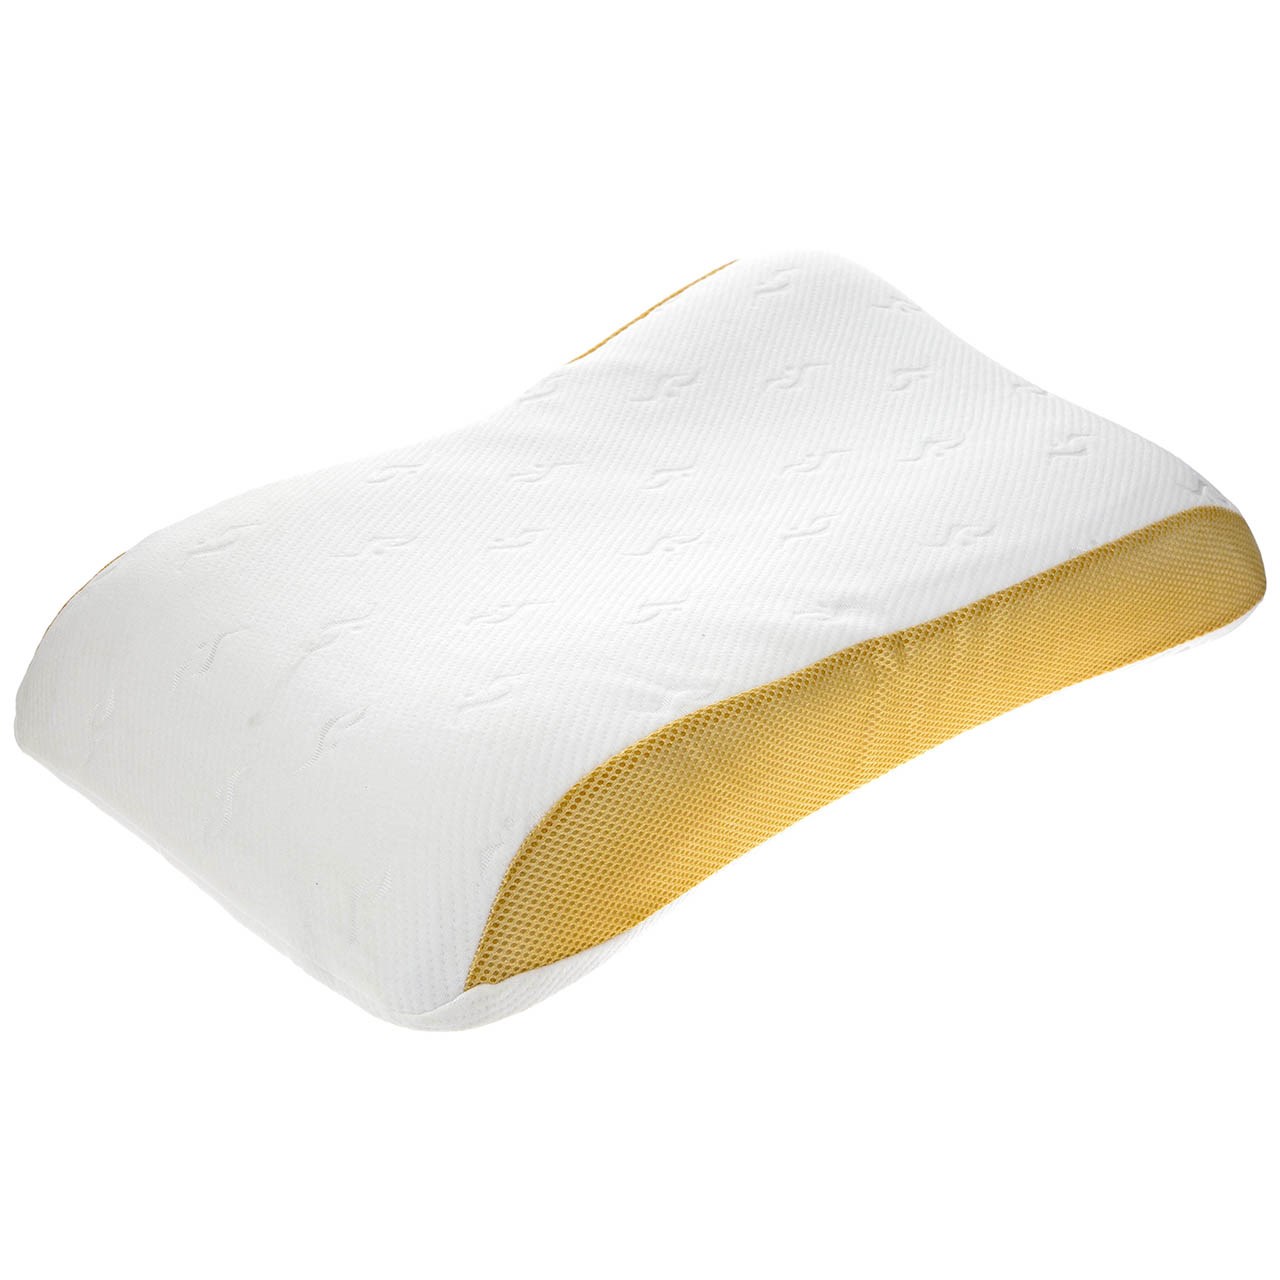 بالش طبی 2 ام دی گلد مدل Orthopedic Pillows